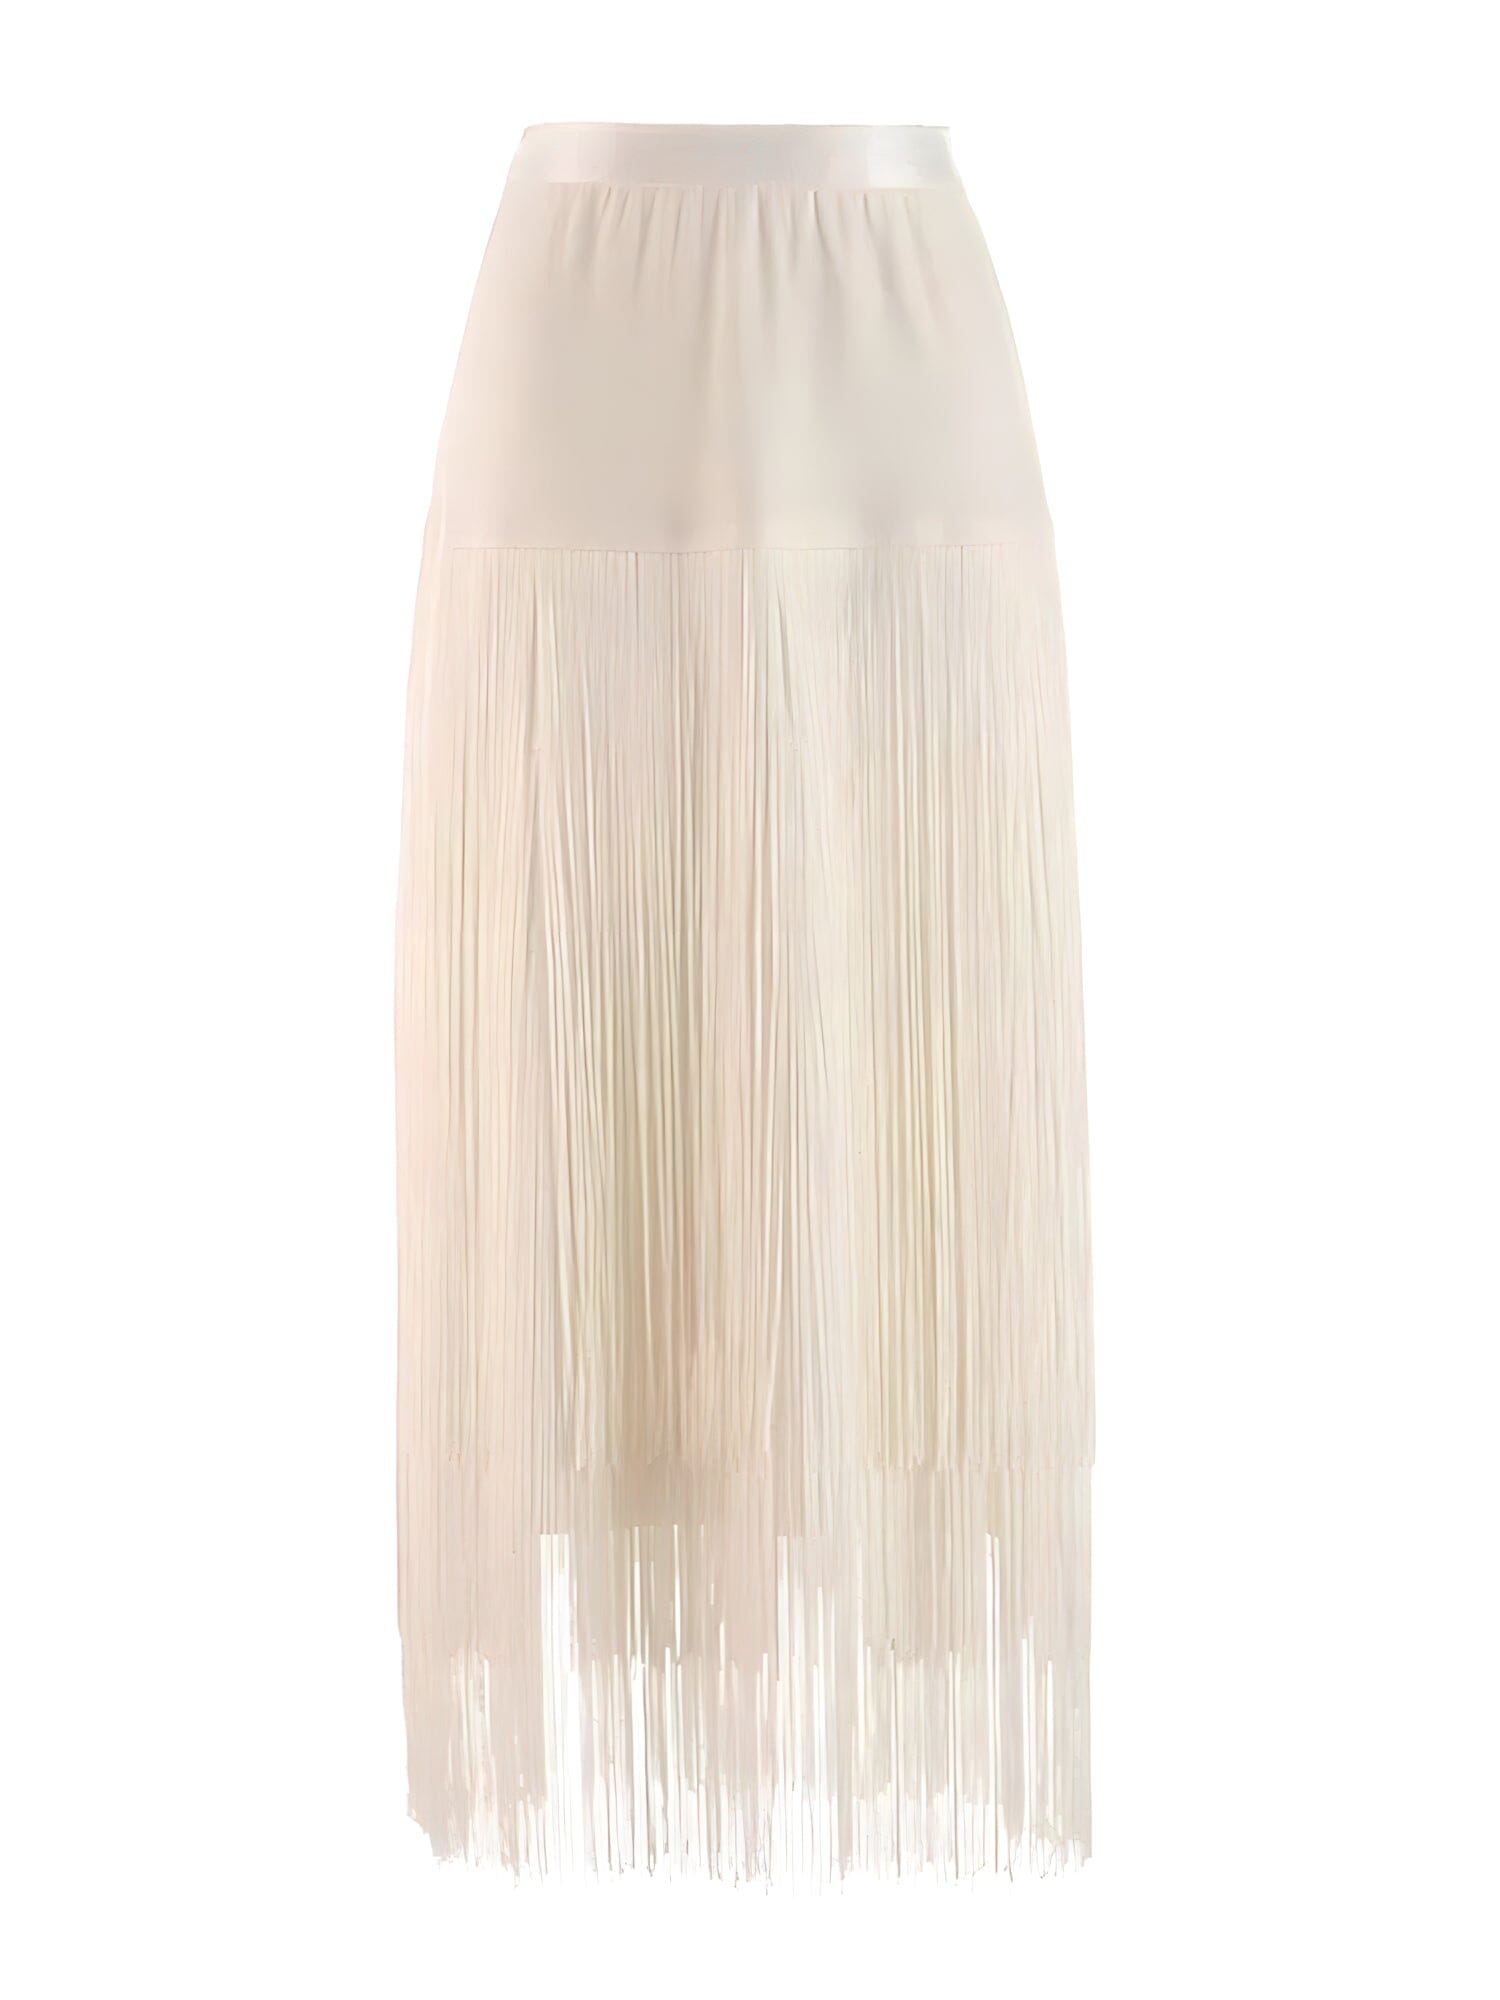 The Pamela High Waist Tassel Skirt - Multiple Colors 0 SA Styles White S 